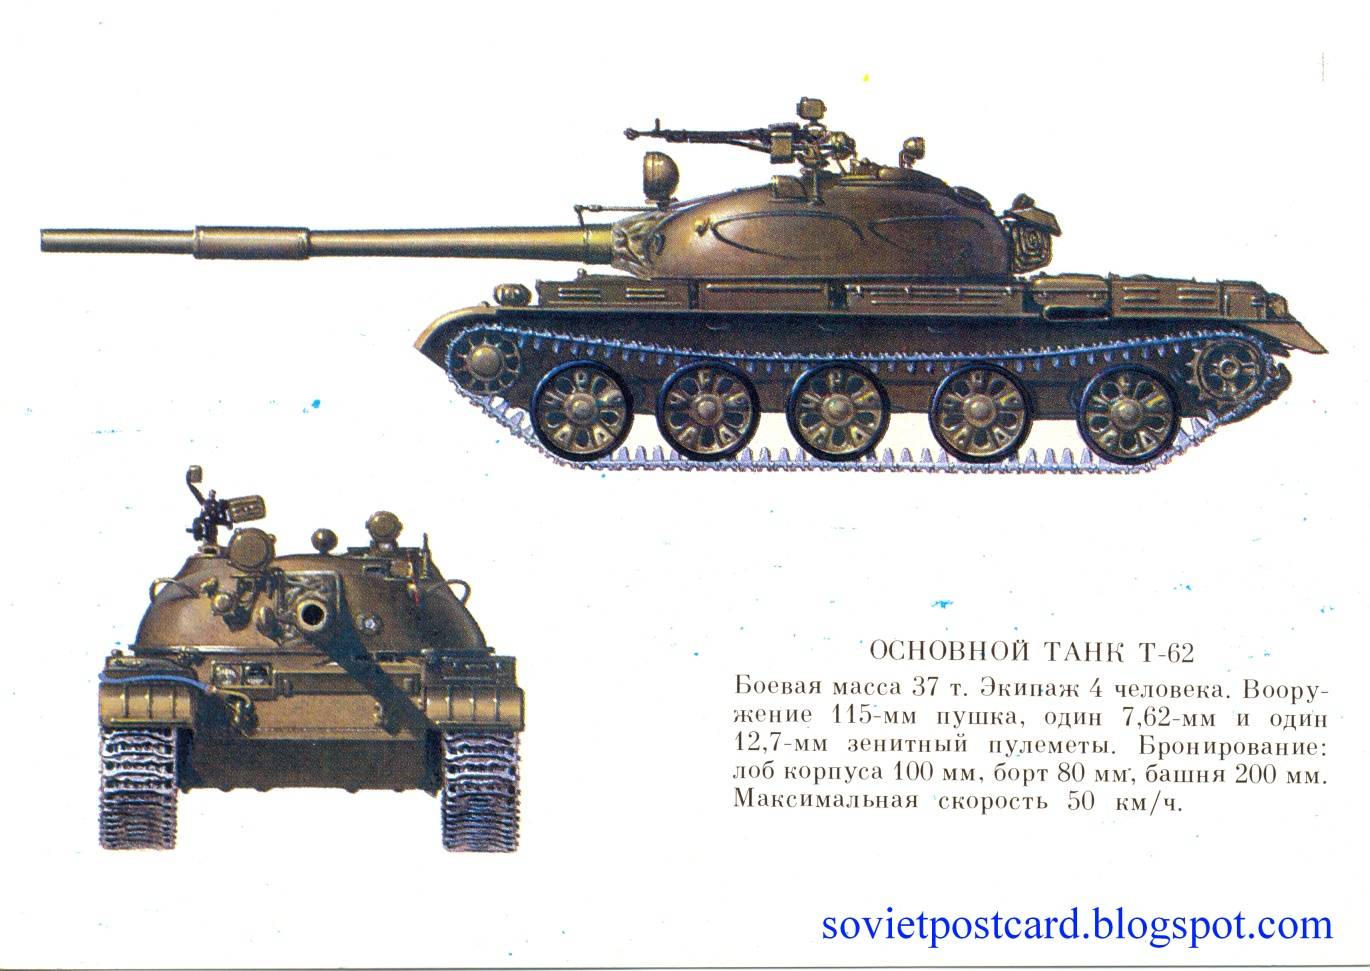 [запад: 10 лет без новых танков] обновлённый российский т-62 превосходит западные танки, полученные украиной. все украинские - 70-х годов выпуска, а «леопарды 2» и «абрамсы» — конца 70-х начала 80-х / news2.ru